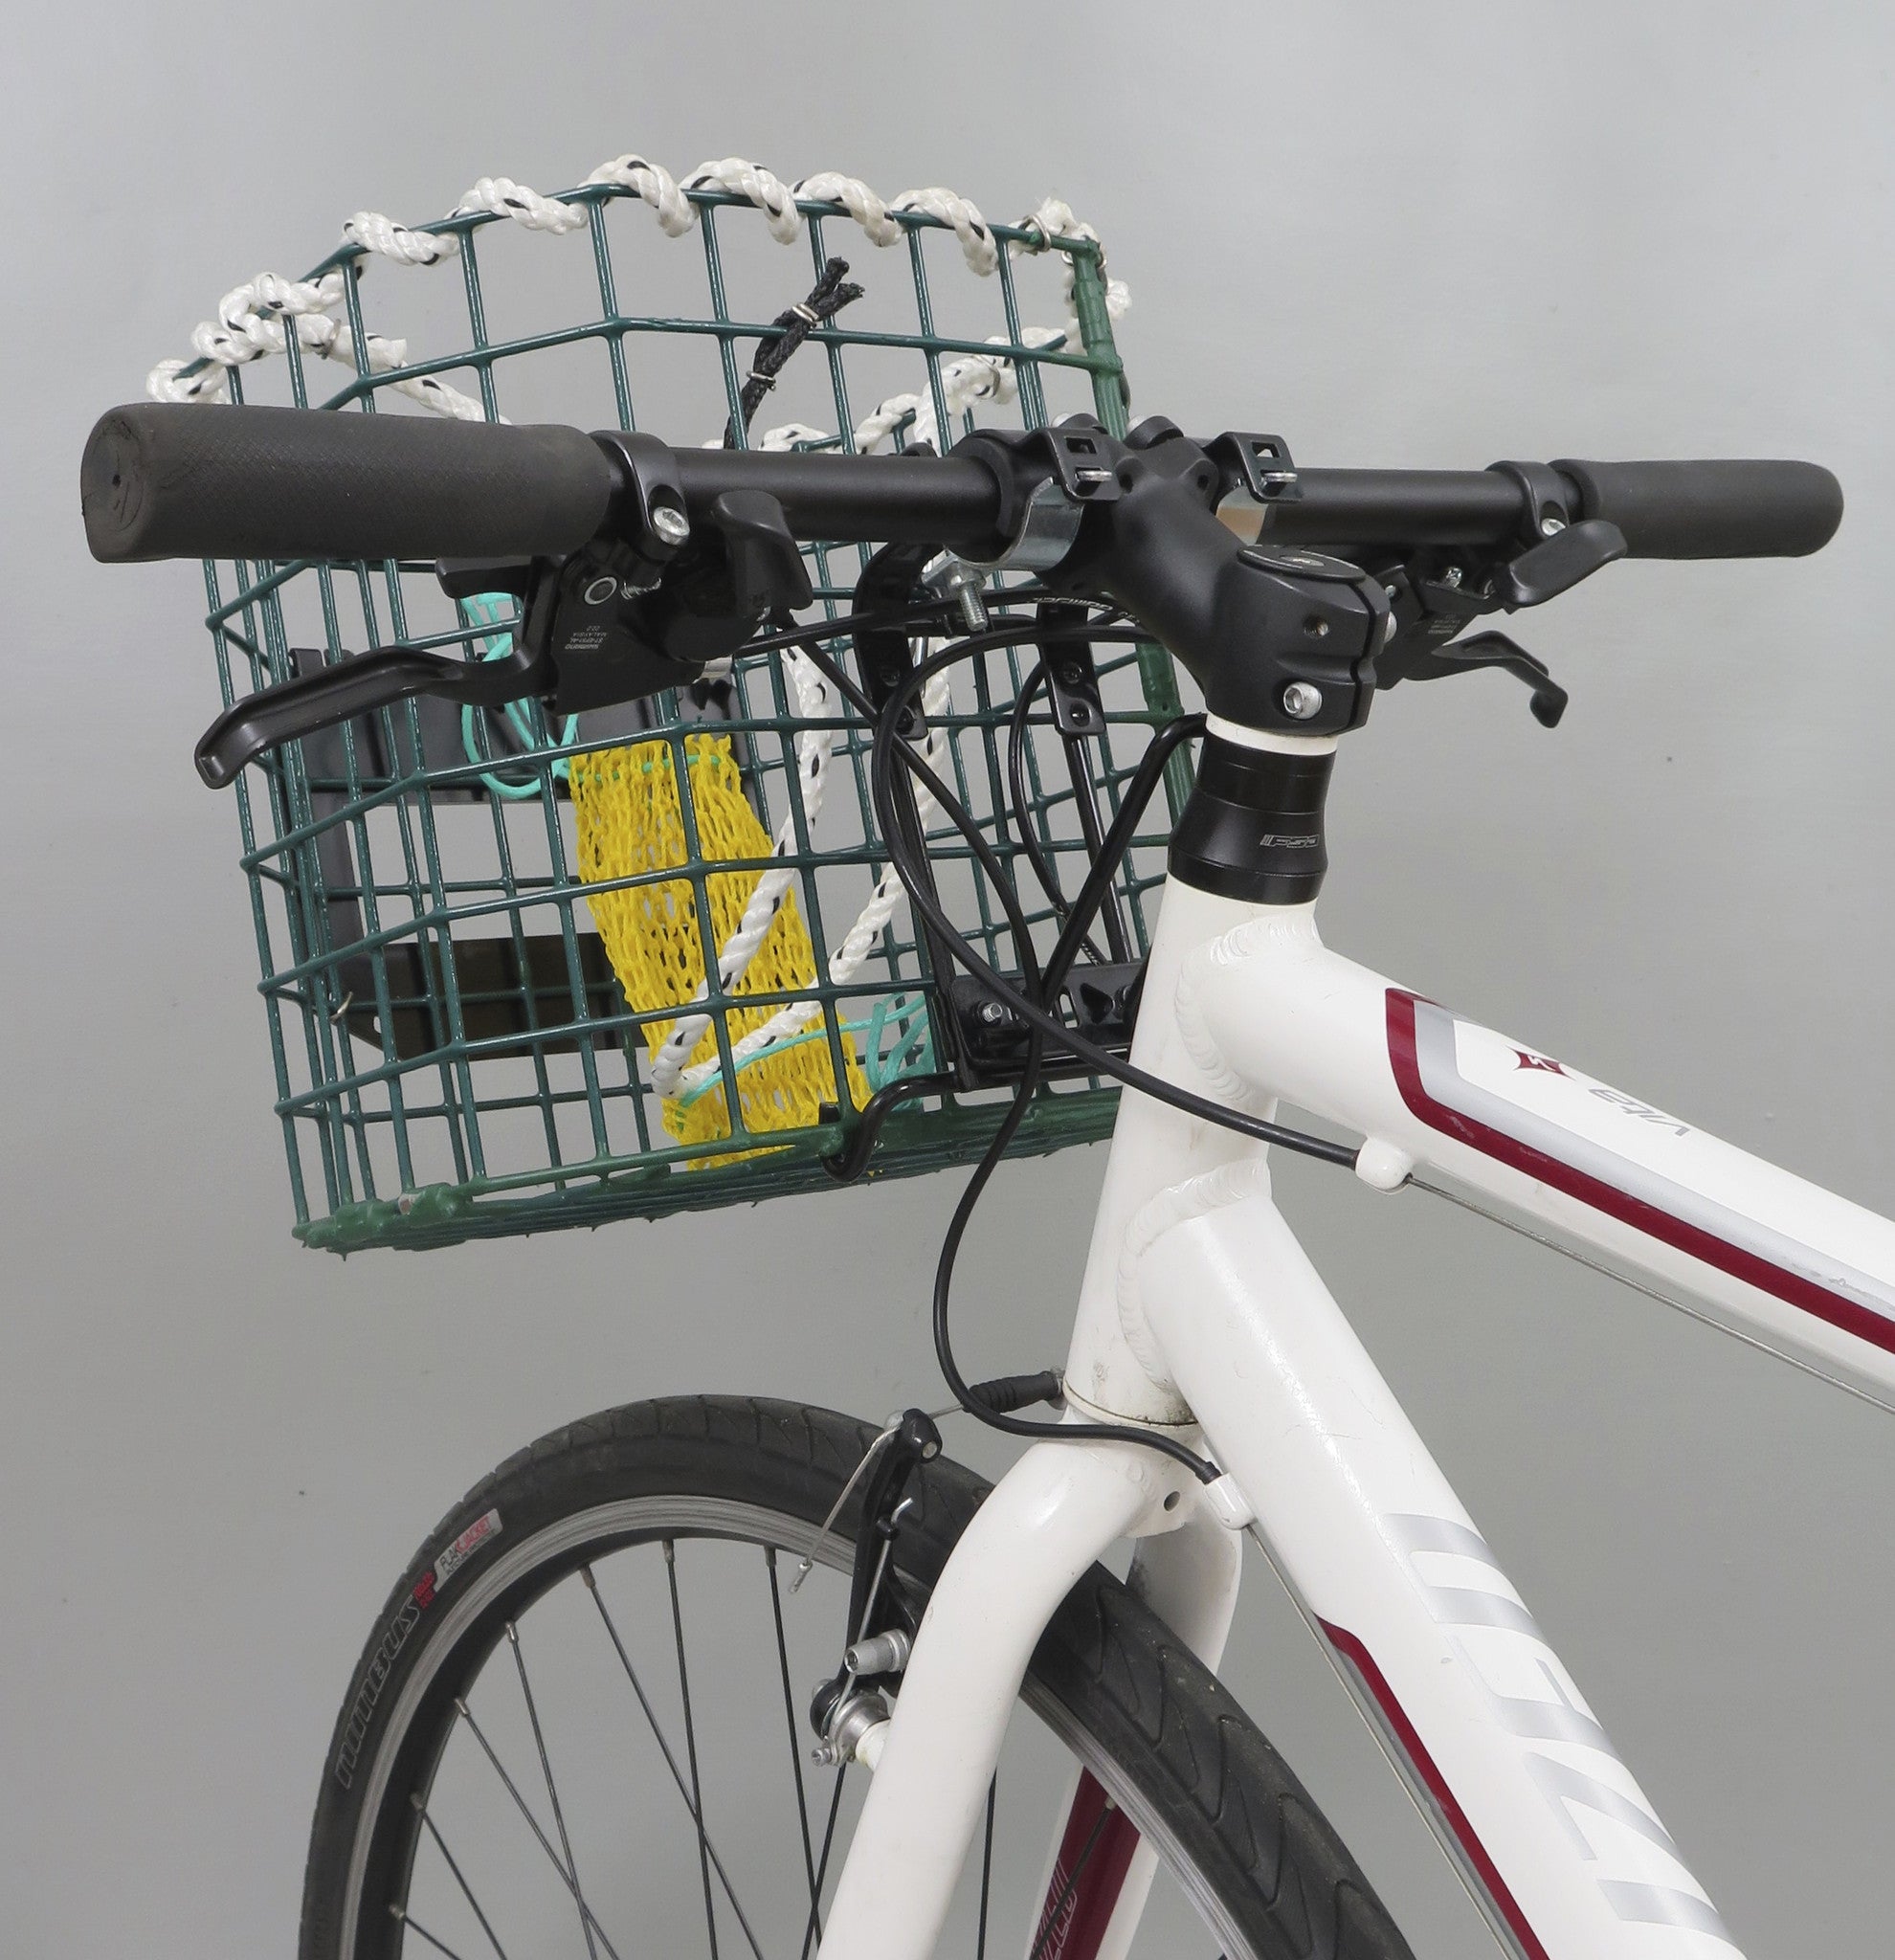 removable bike basket